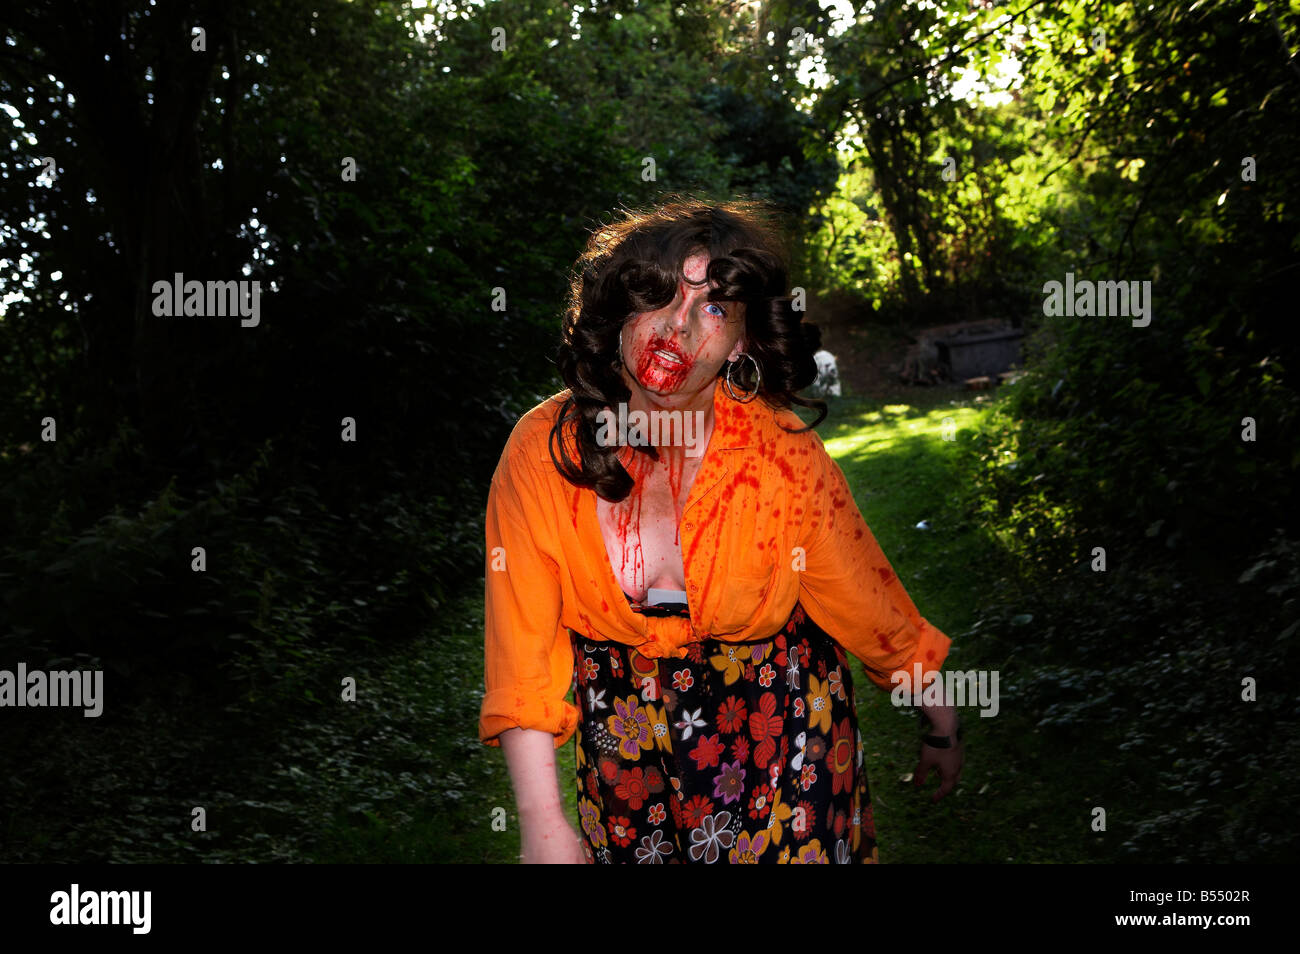 Una Donna vestita come uno zombie passeggiate attraverso i boschi Foto Stock